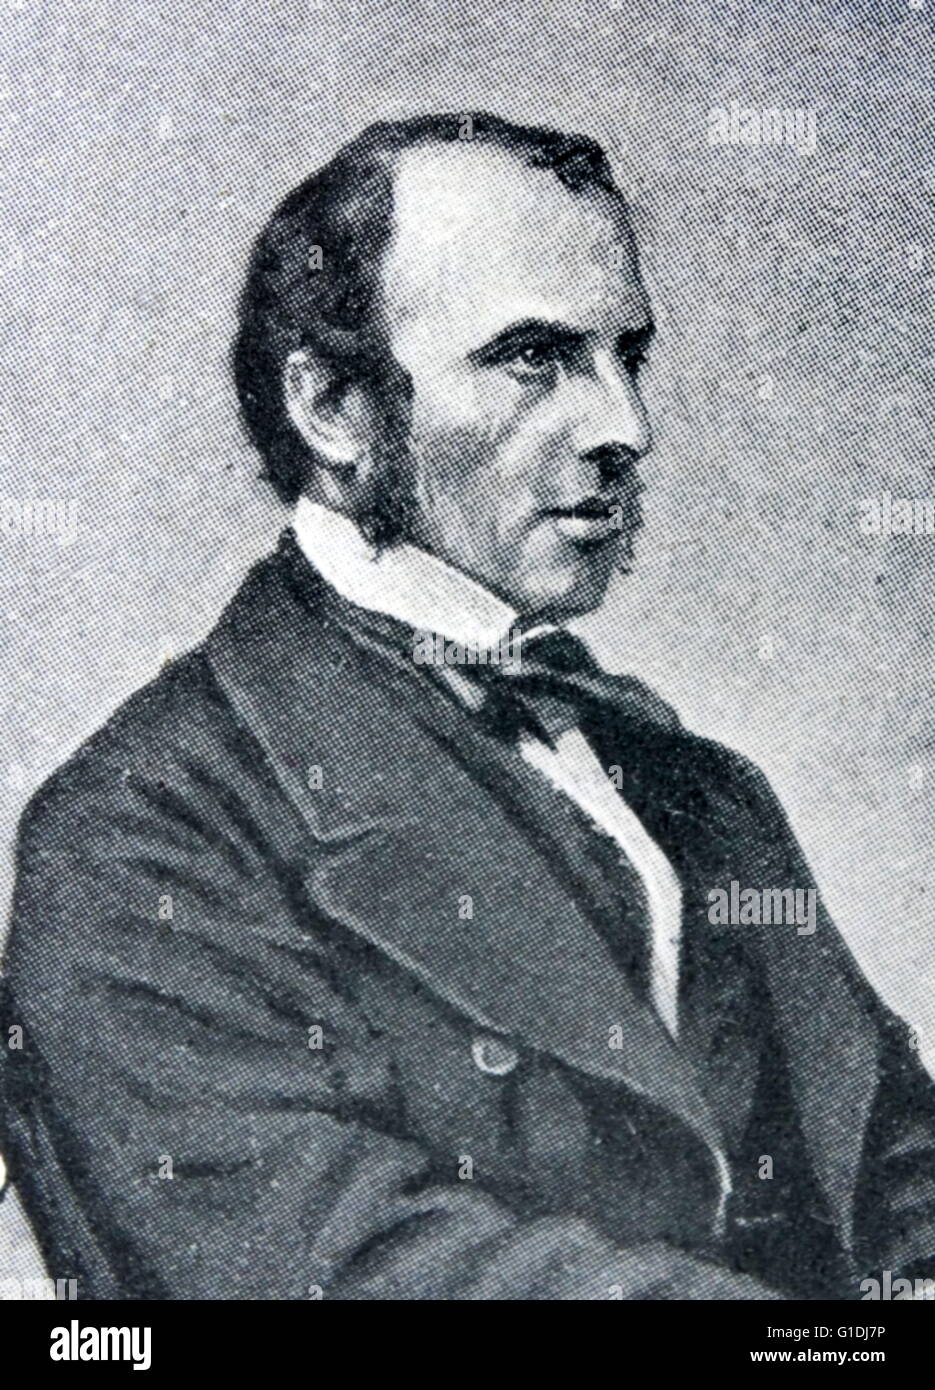 Charles John Canning, primo Earl Canning KG GCB GCSI PC (14 dicembre 1812 - 17 giugno 1862), noto come il Visconte Canning dal 1837 al 1859, è stato un statista inglese e Governatore Generale dell'India durante la Ribellione indiana del 1857. Foto Stock